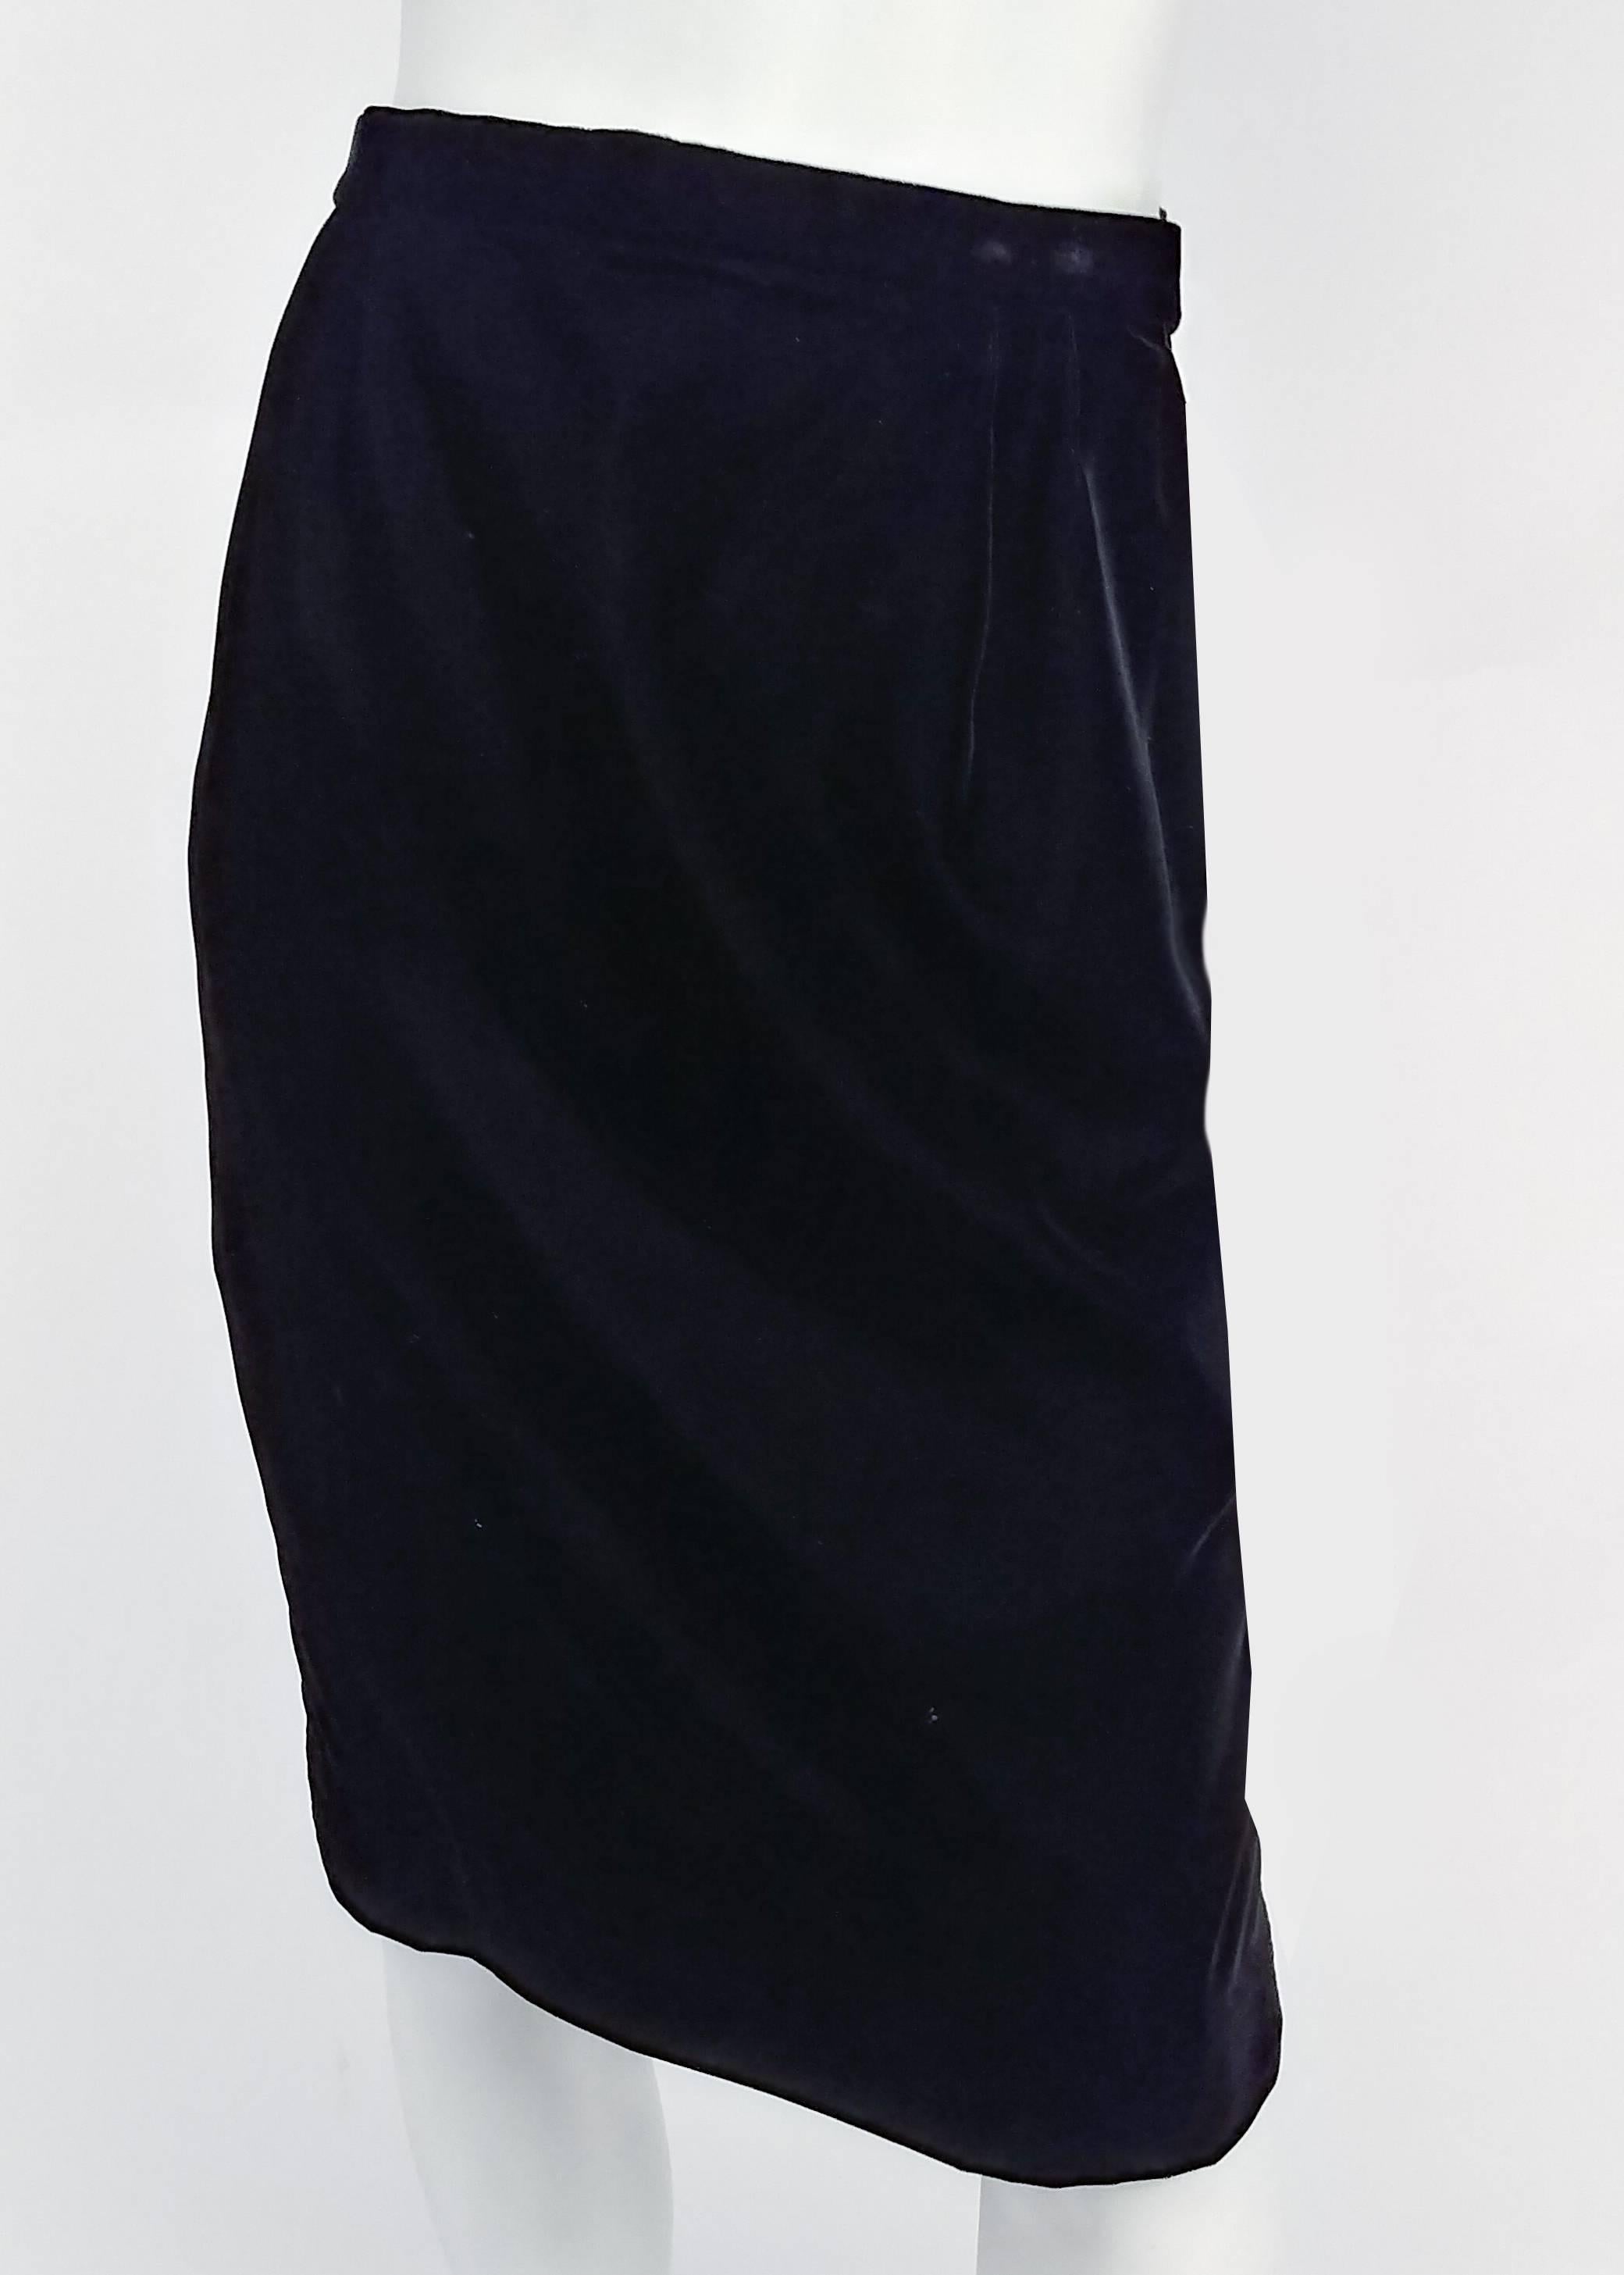 Women's 1980s Lilli Rubin Black Velvet Jacket & Skirt Suit Set w/ White Satin Trim For Sale